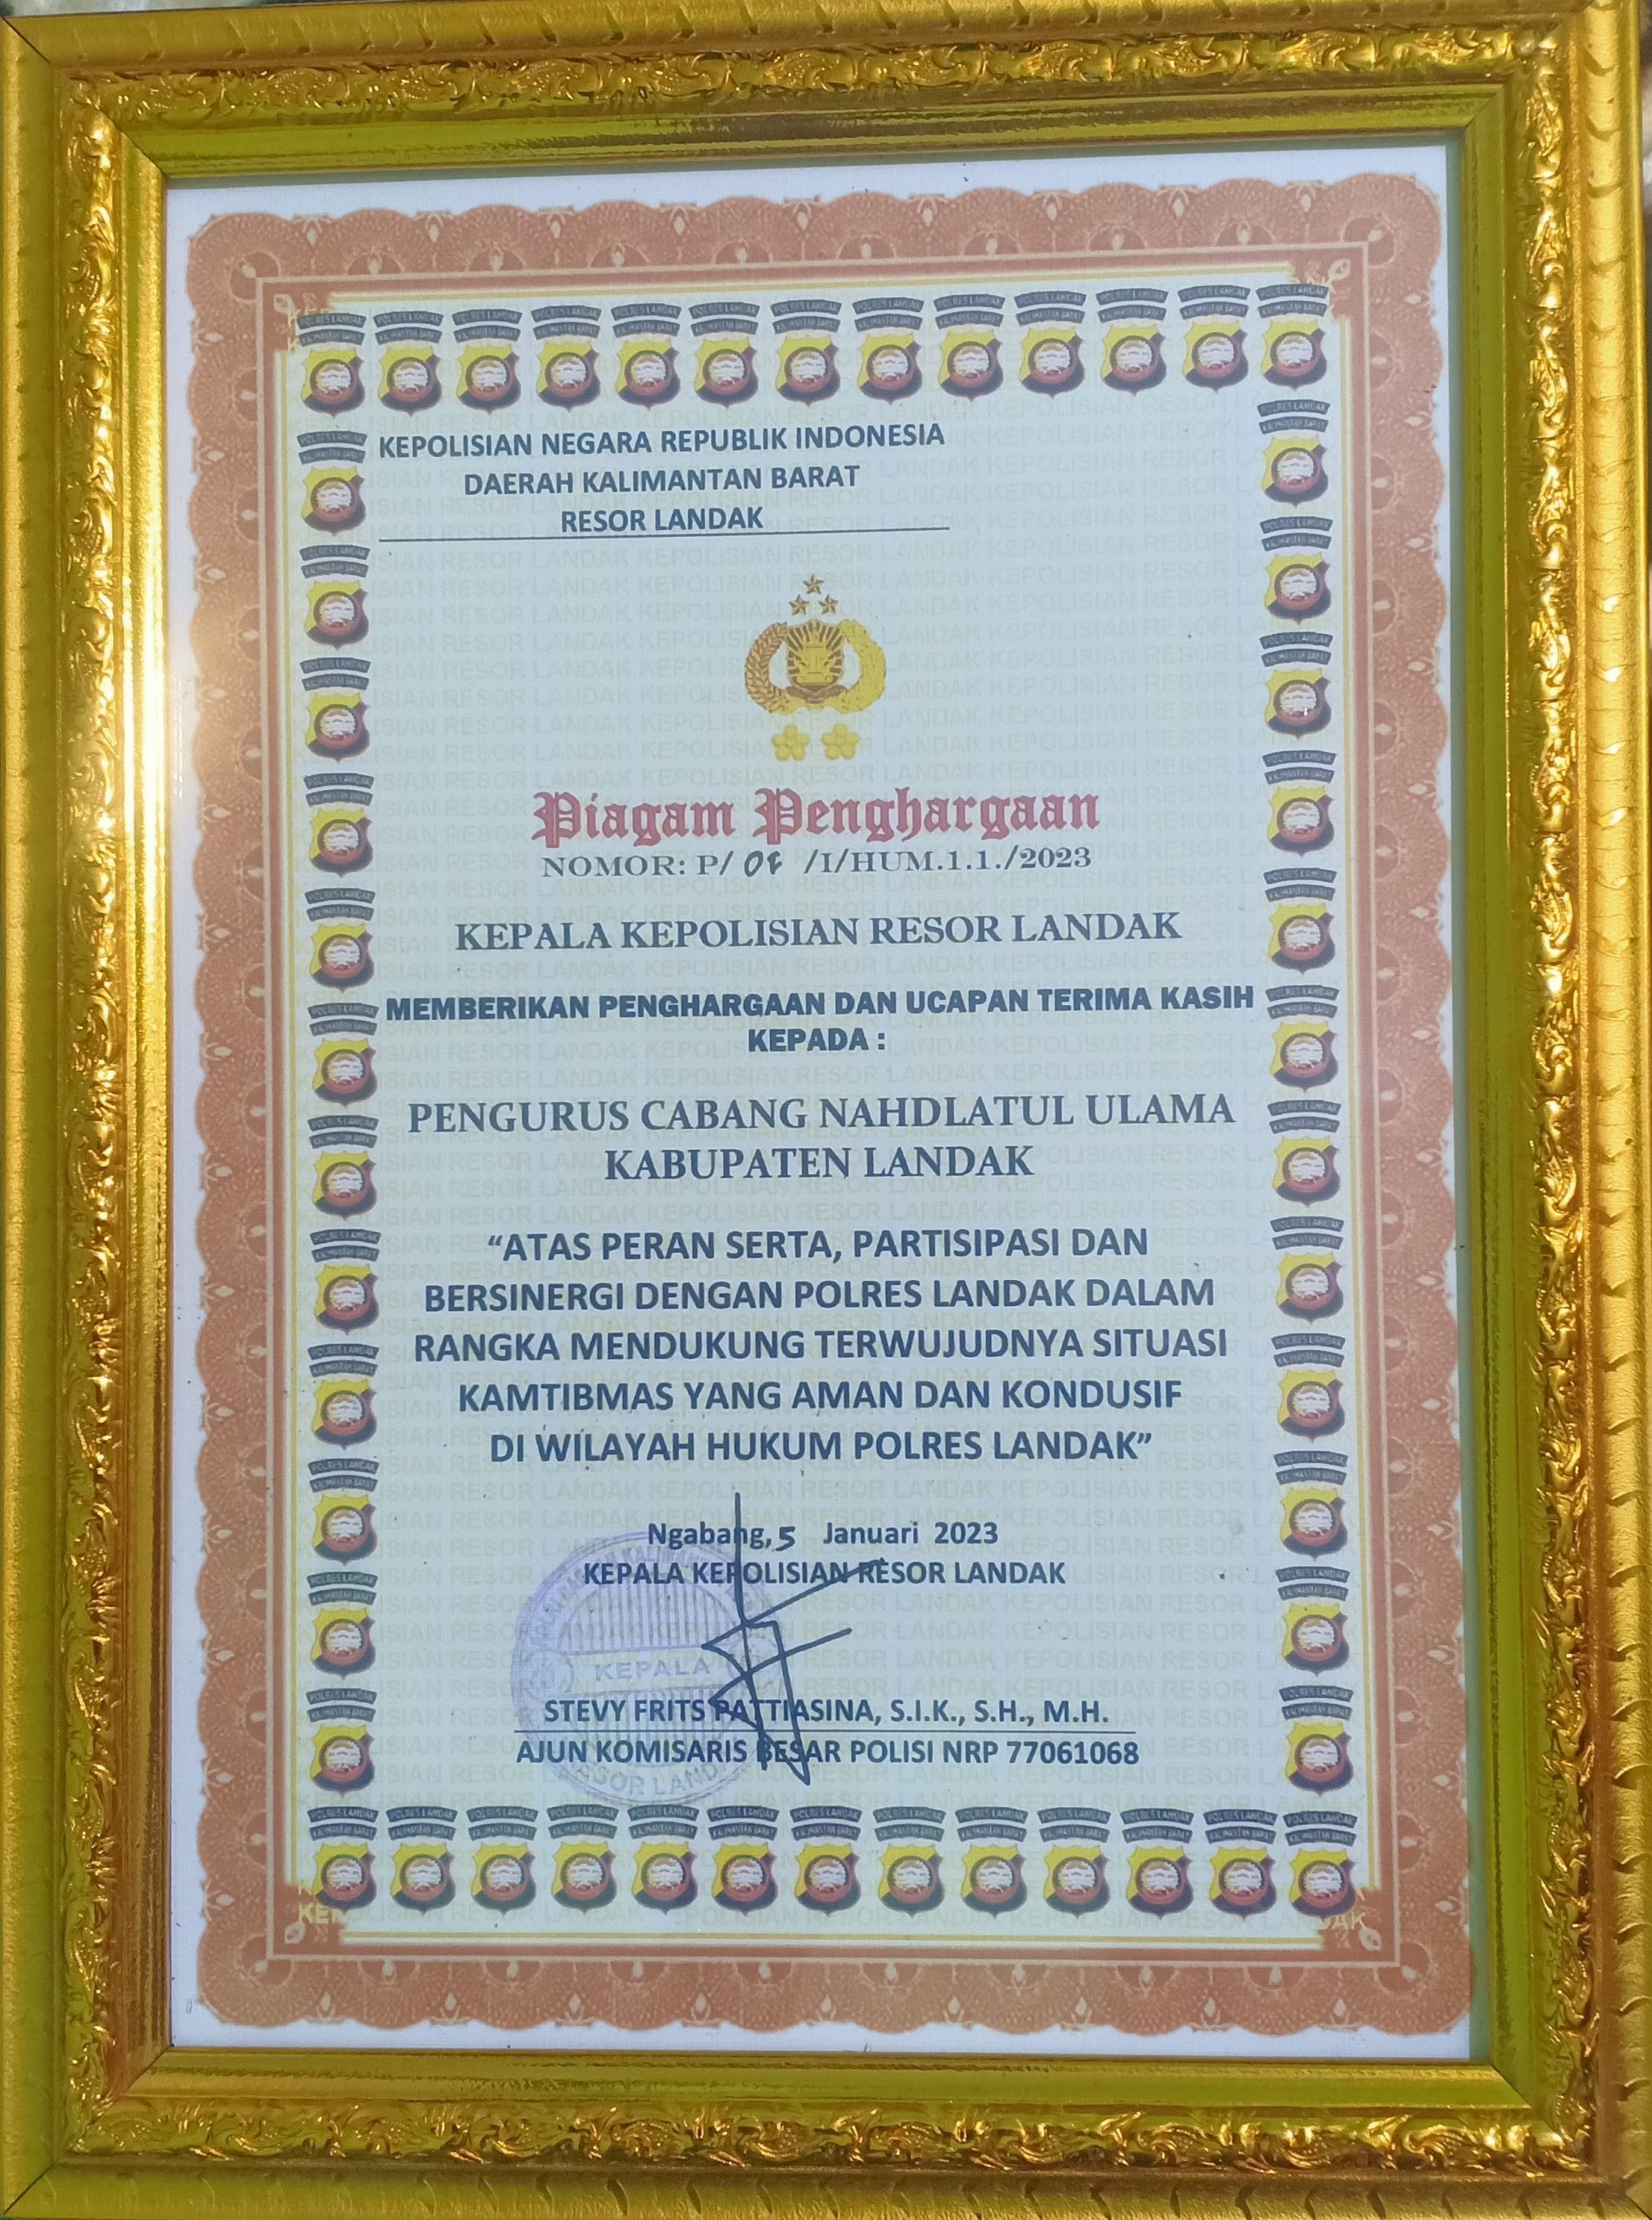 Kepala Kepolisian Resor Landak Memberikan Penghargaan kepada Pengurus Cabang Nahdlatul Ulama (PCNU) Kabupaten Landak